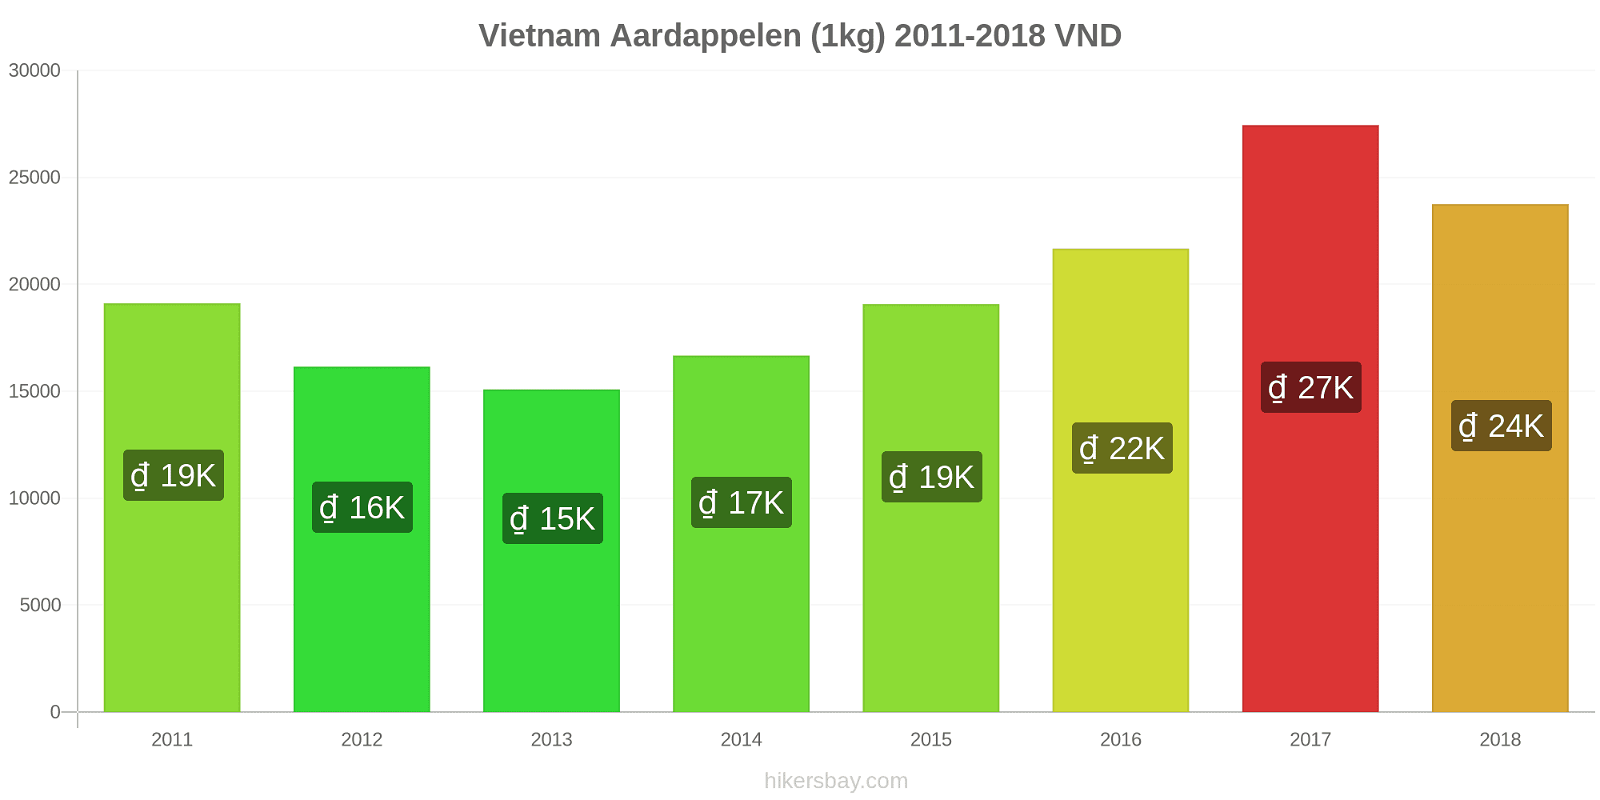 Vietnam prijswijzigingen Aardappelen (1kg) hikersbay.com